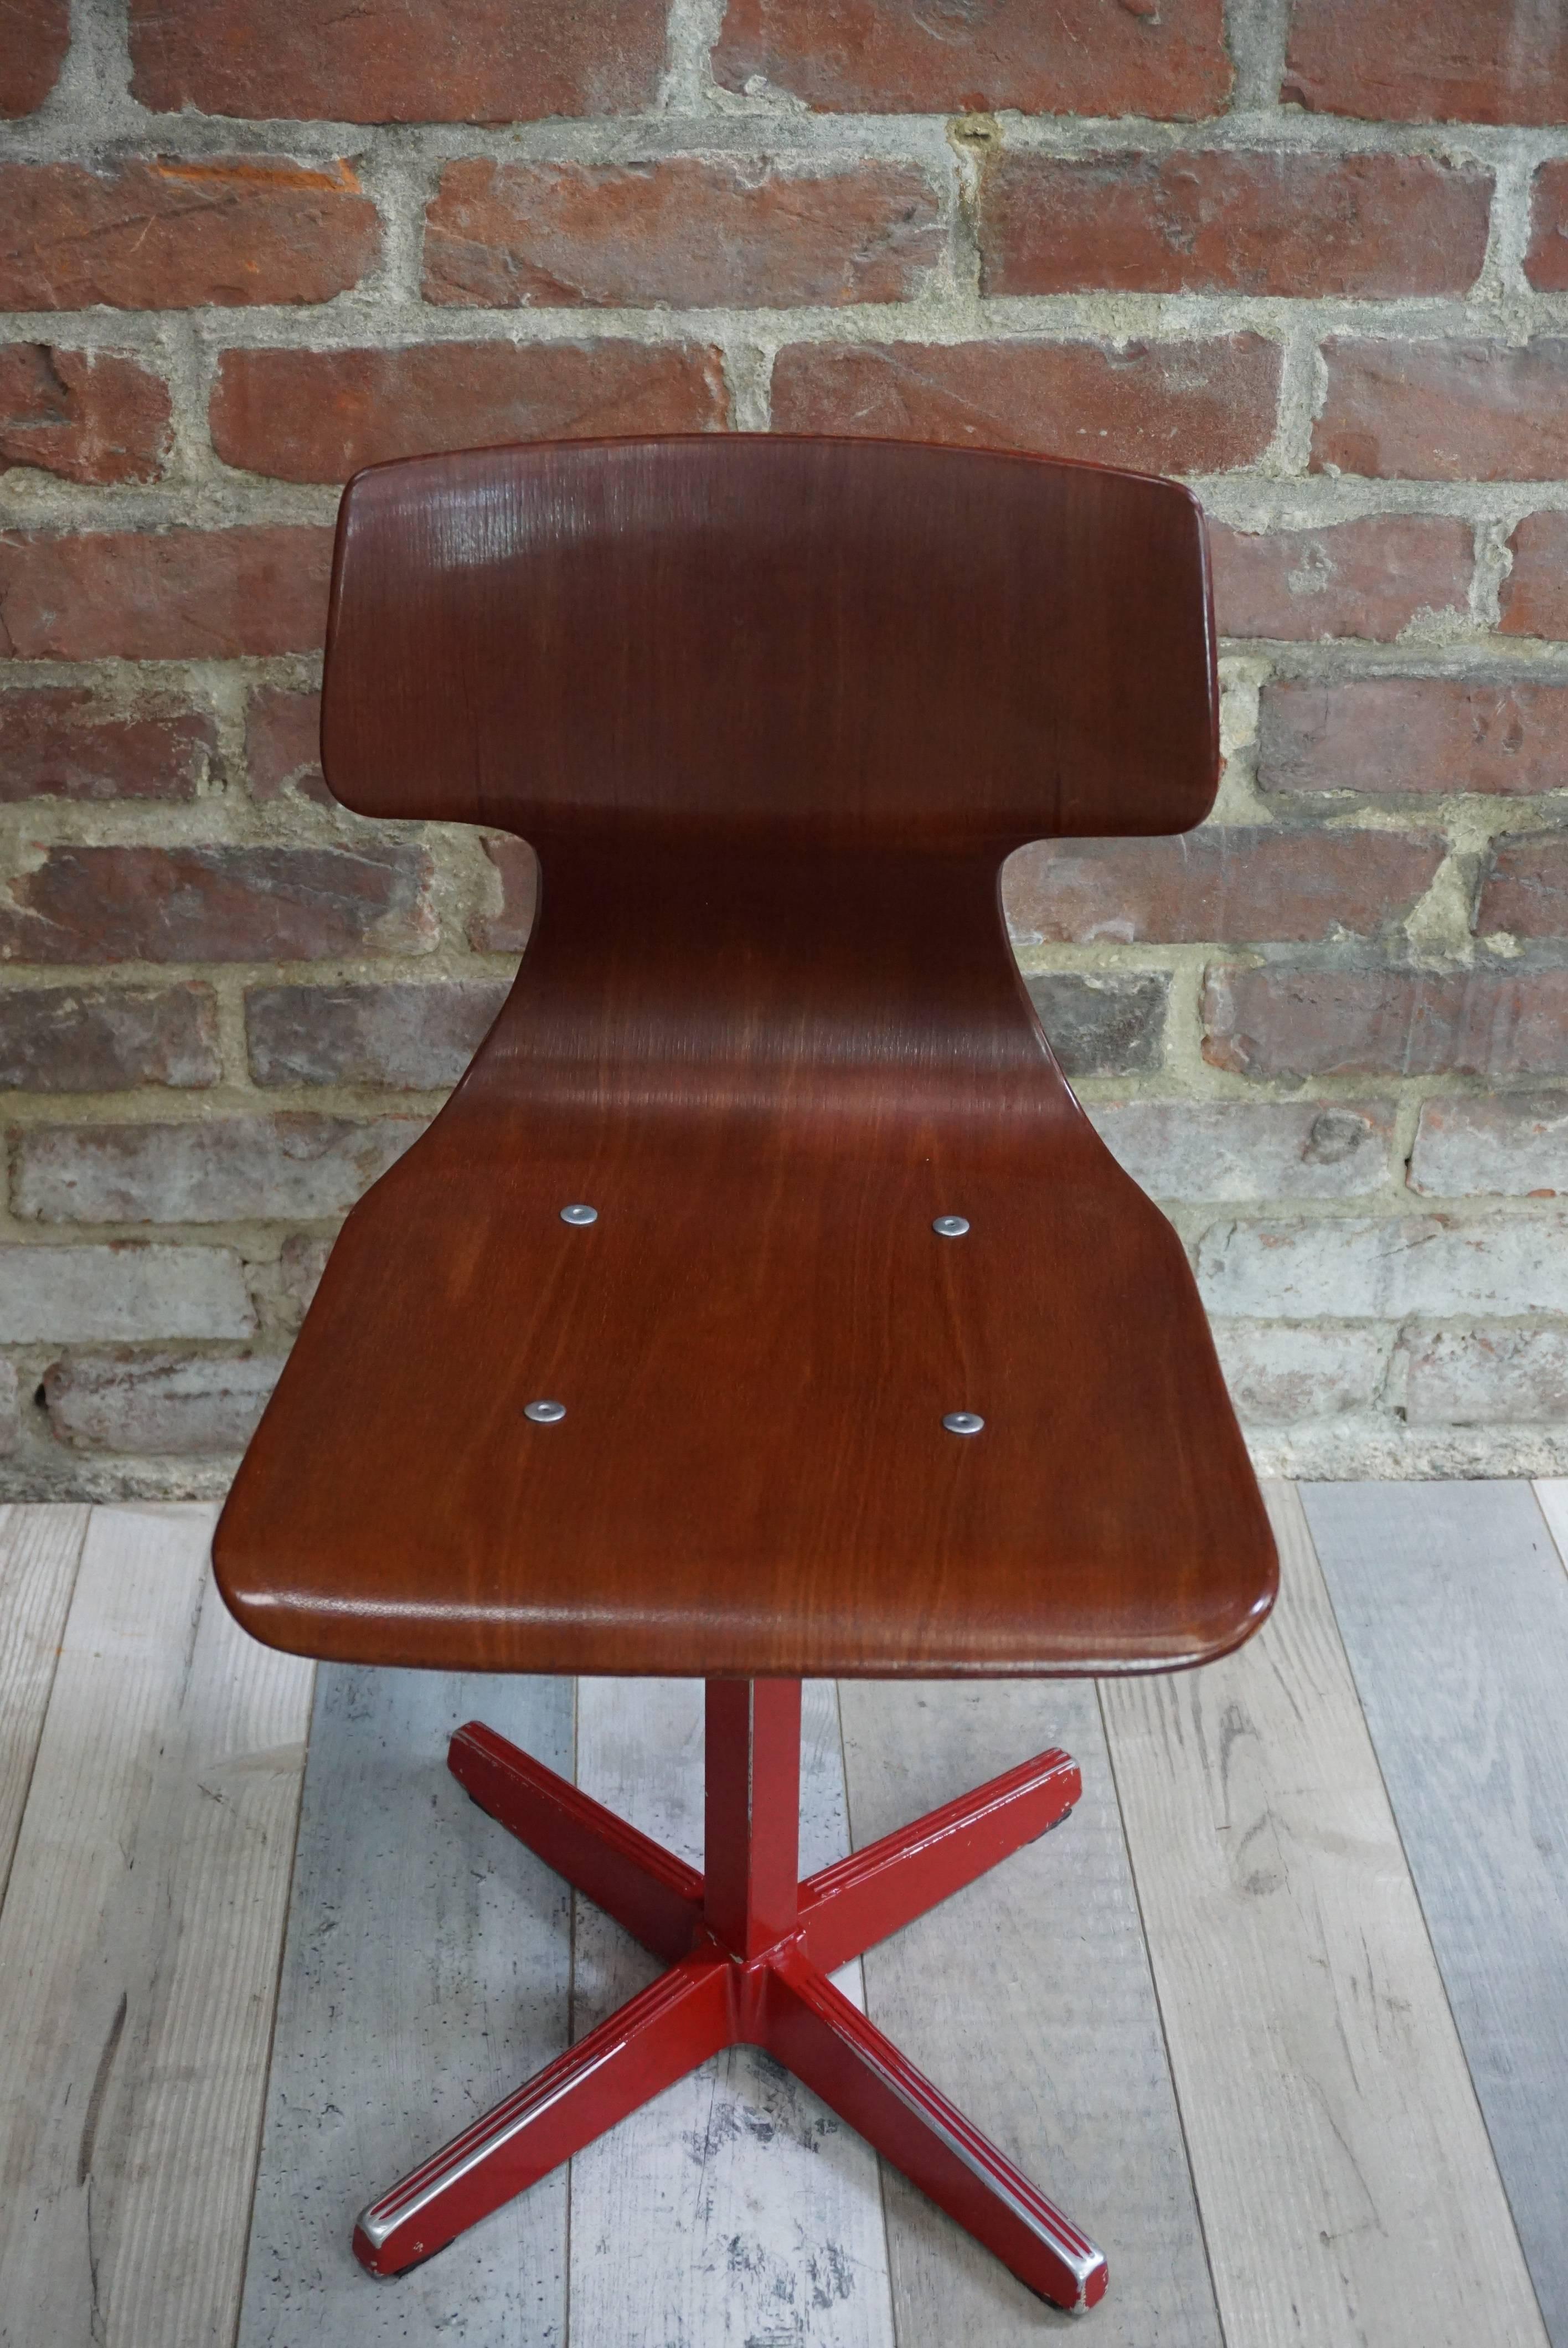 Schöner, gestempelter und nummerierter Stuhl, der in den späten 1950er und in den 1960er Jahren für öffentliche Gebäude (Universitäten, Werkstätten, Kantinen) hergestellt wurde. Die Galvanitas-Werkstatt war damals für ihre Qualität und Langlebigkeit